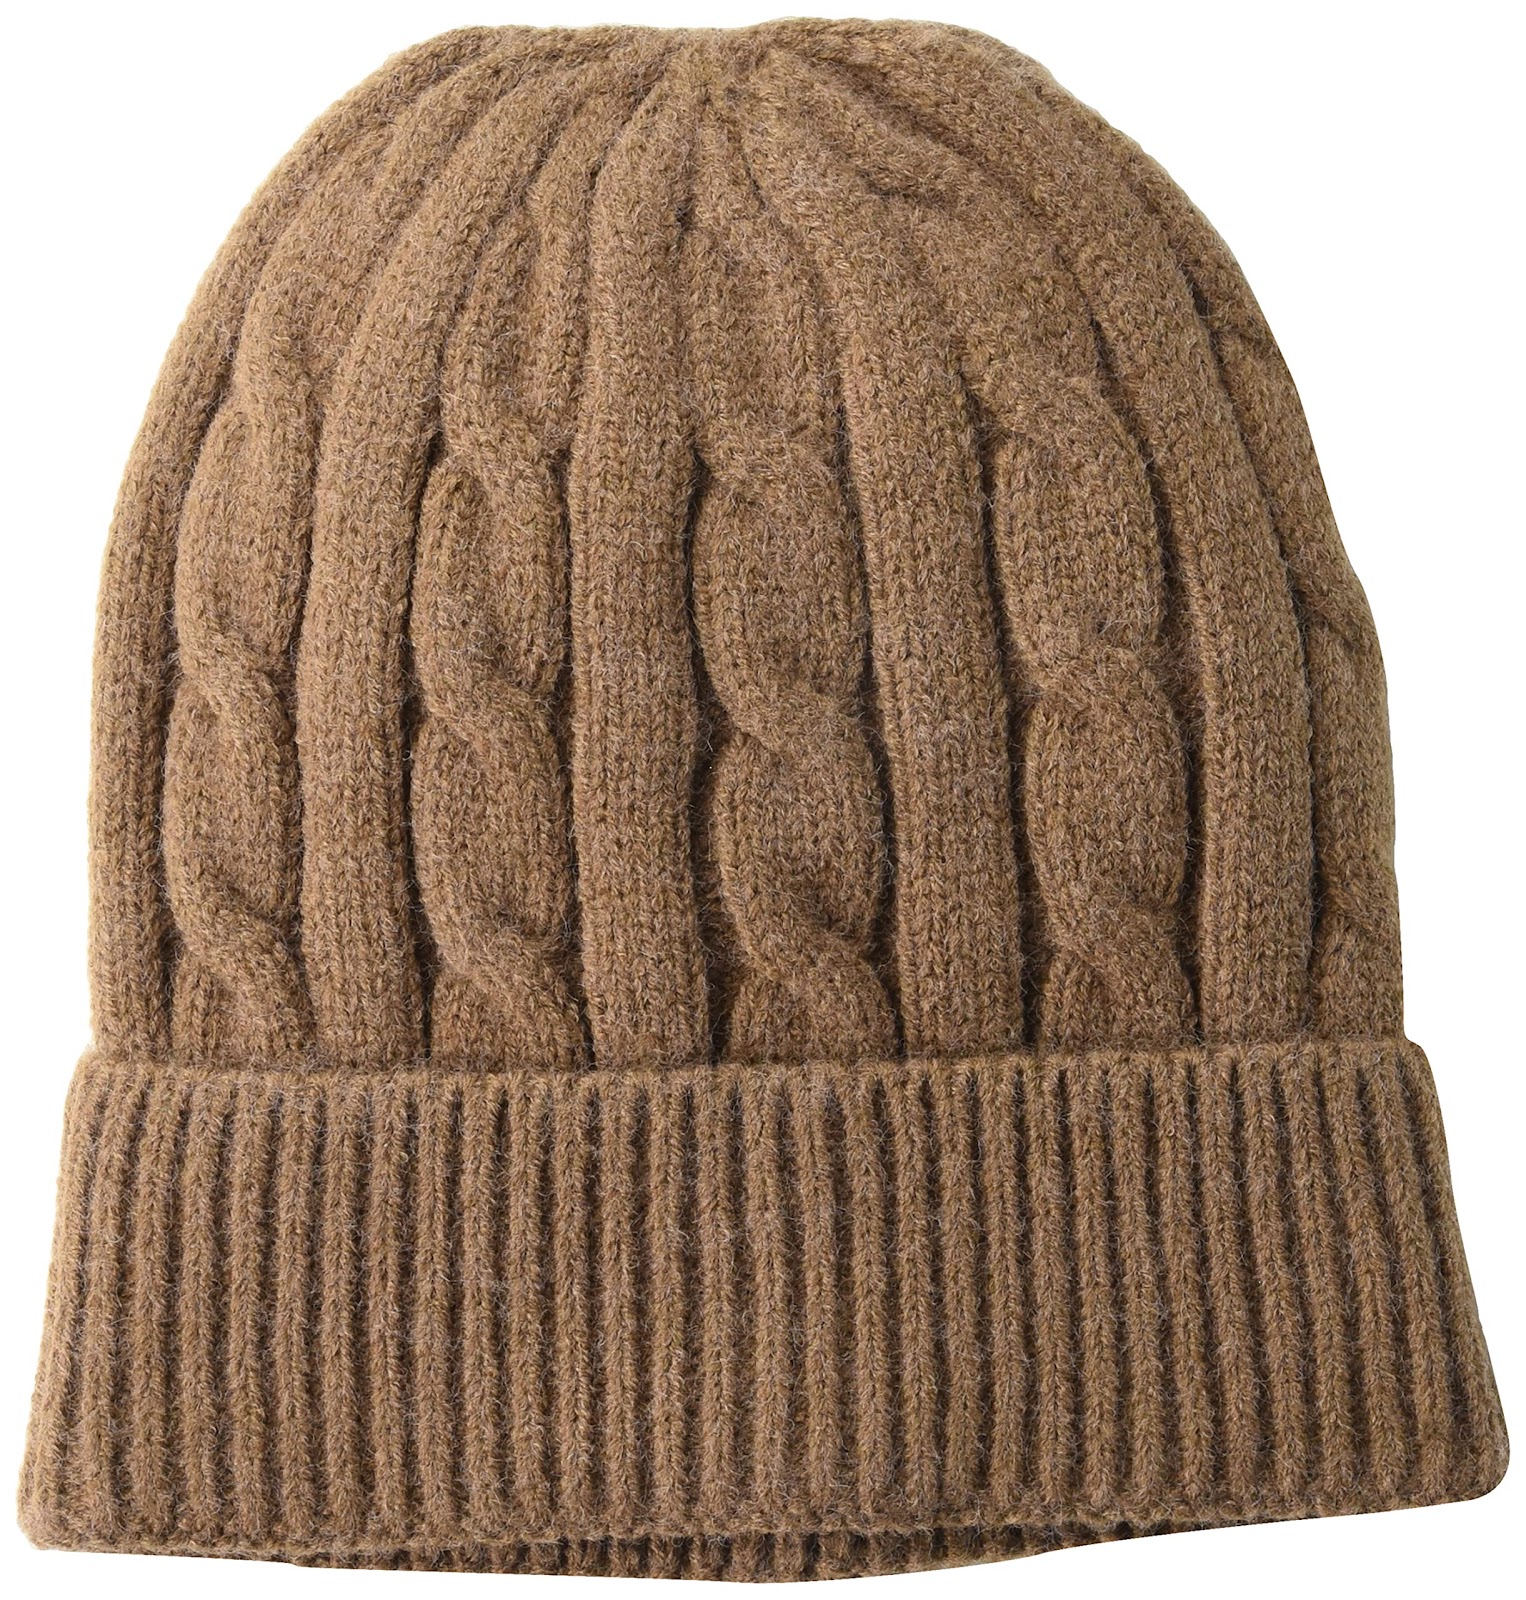 Amazon Essentials Men's Cable Knit Hat